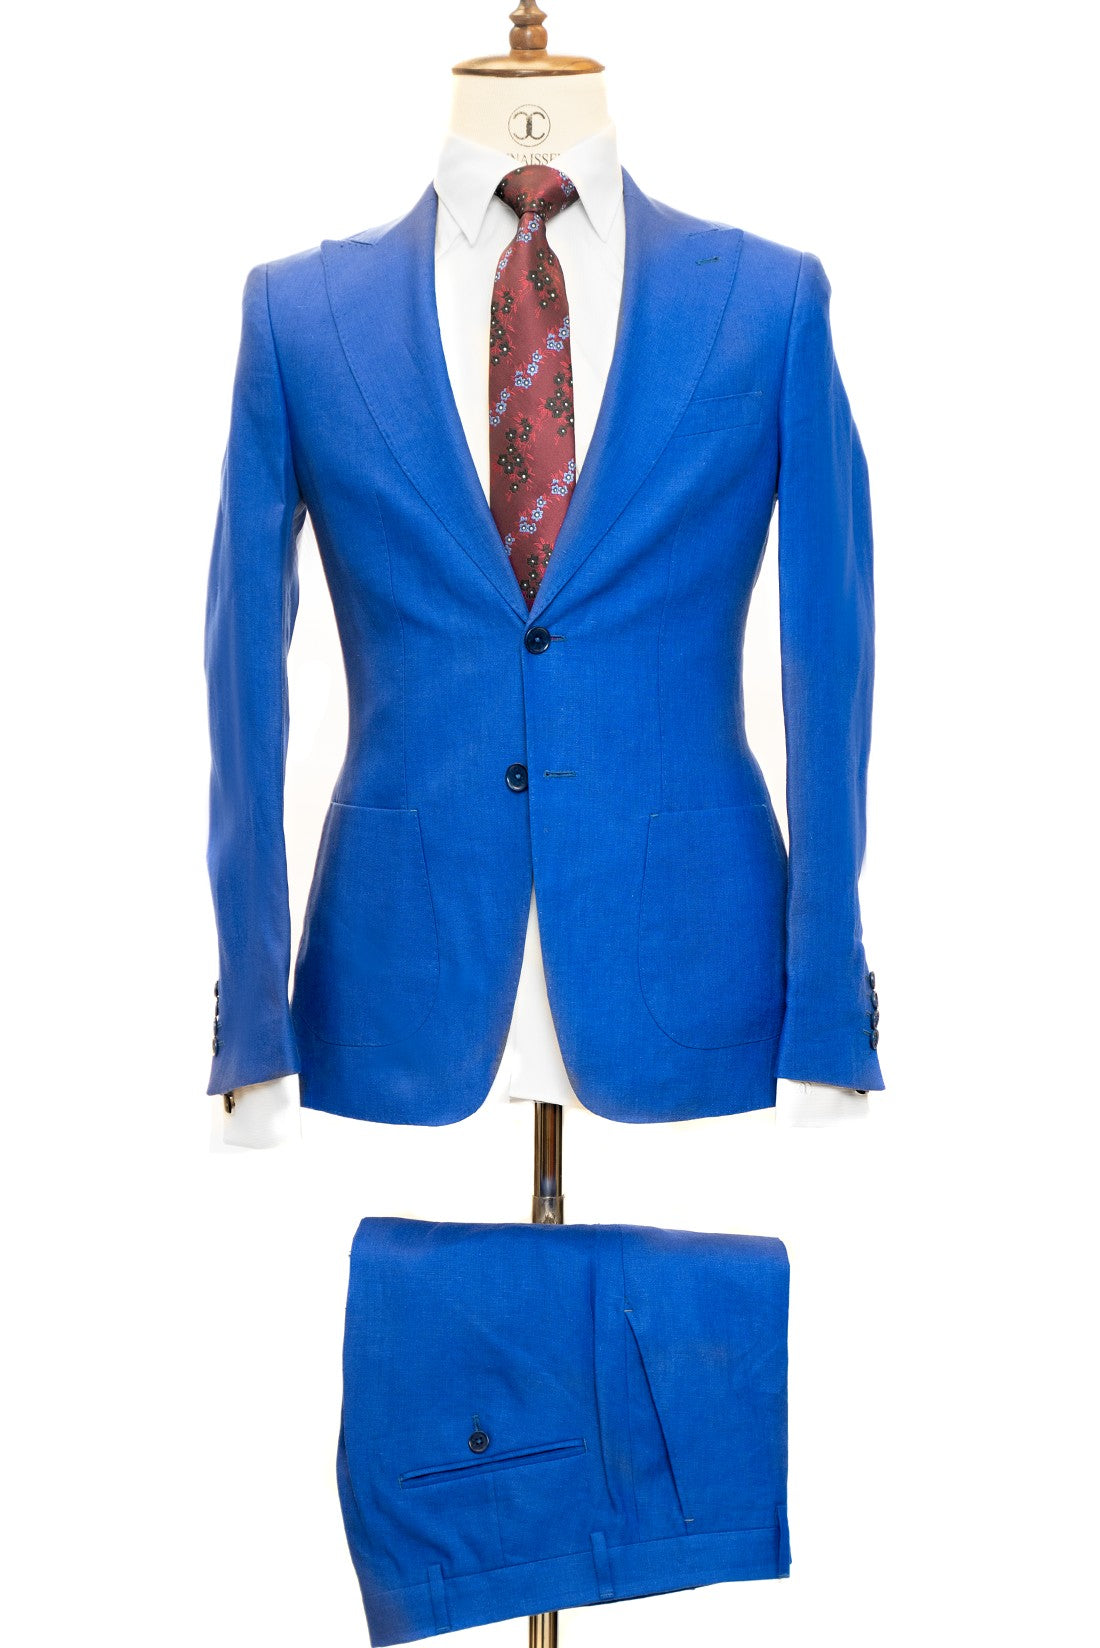 Connaisseur Paris - Royal Blue 2 Piece Slim Fit Linen Suit with Patch Pockets